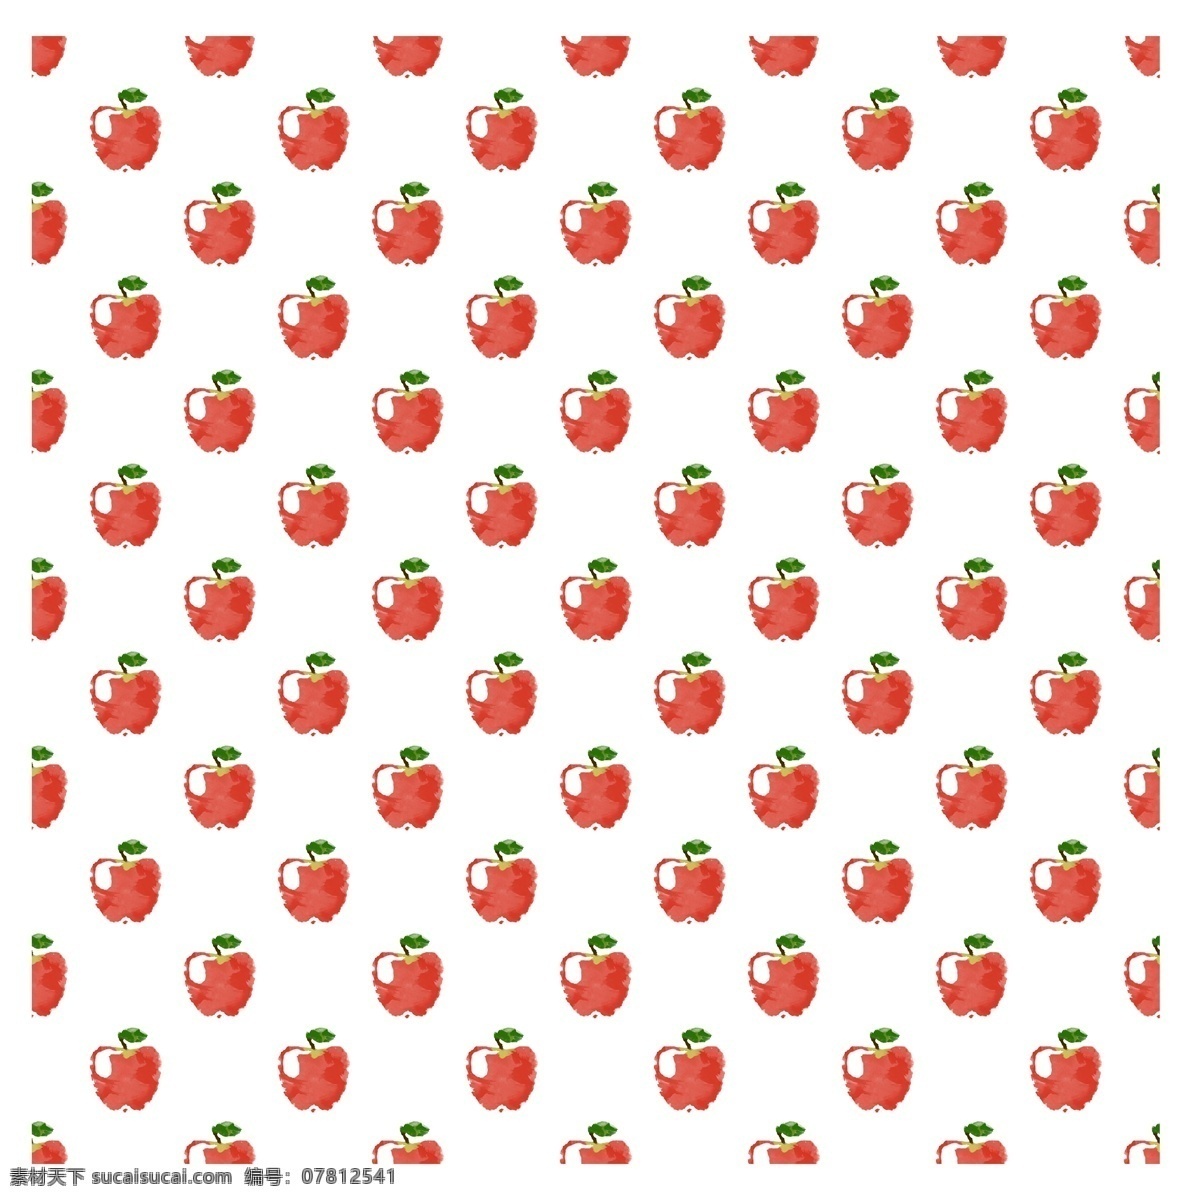 可爱 手绘 通用 苹果 背景 农产品 果蔬 瓜果 丰收 农业 秋收 种植 食物 生鲜 水果 装饰图案 图案 花